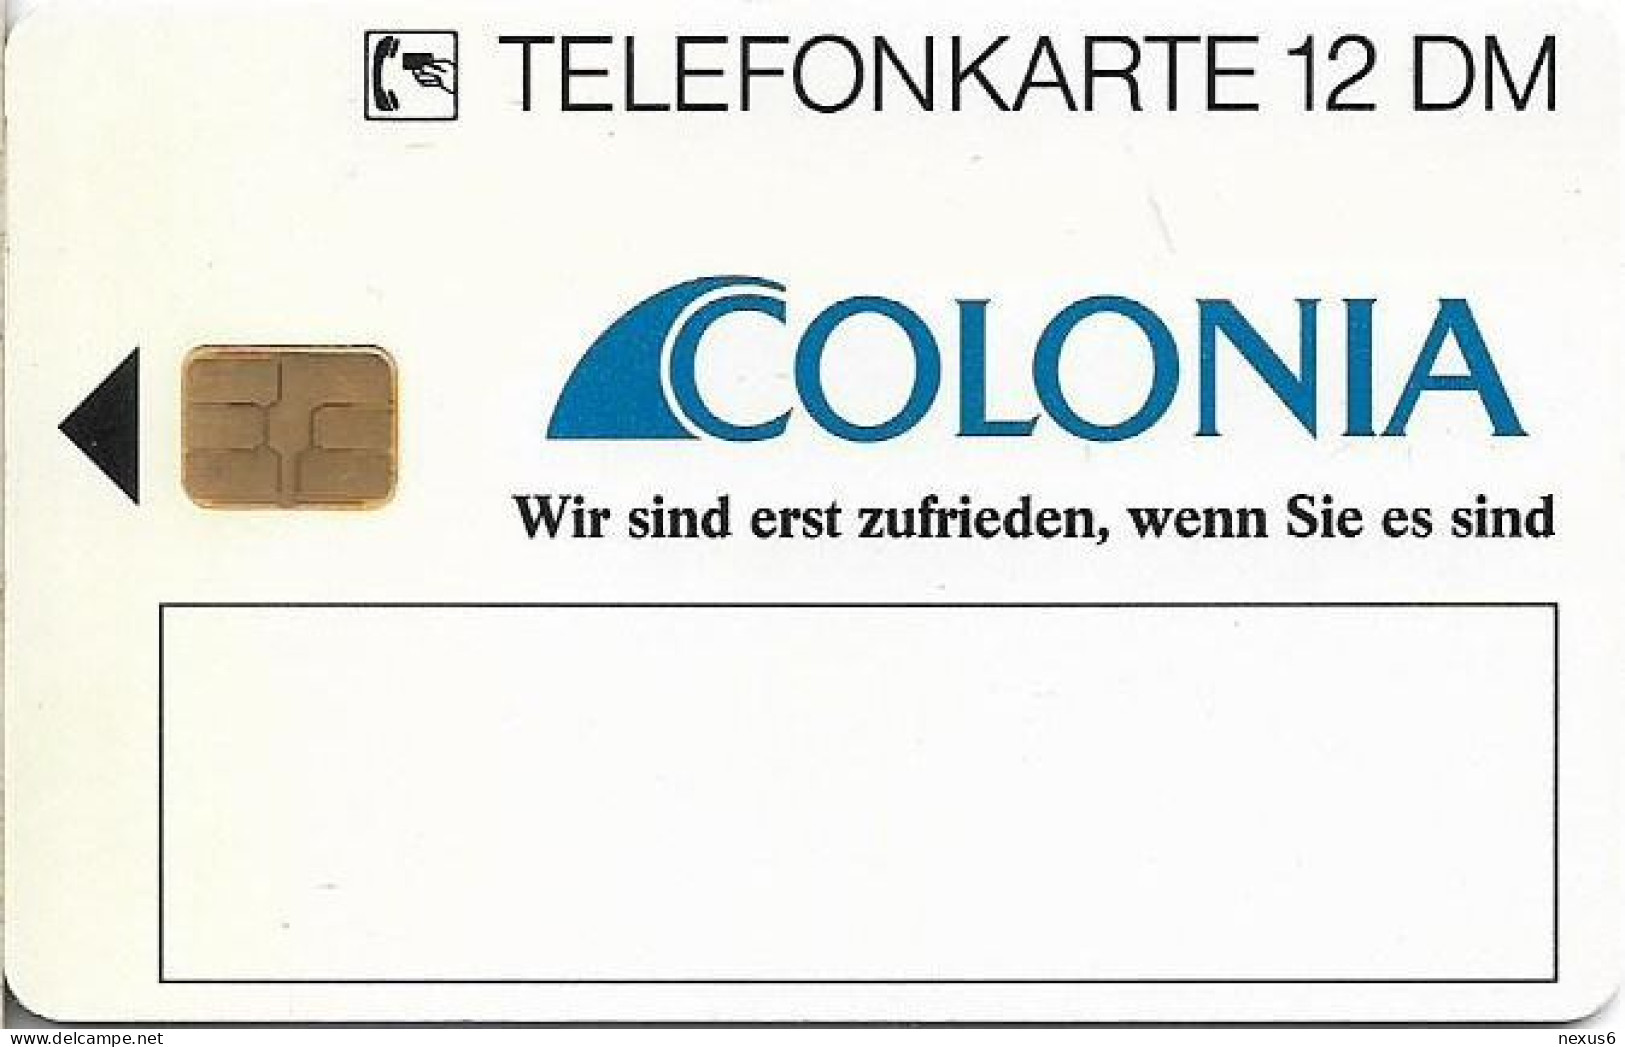 Germany - Colonia Versicherung 2 – Regen - O 0303B - 09.1993, 12DM, 3.000ex, Mint - O-Series: Kundenserie Vom Sammlerservice Ausgeschlossen